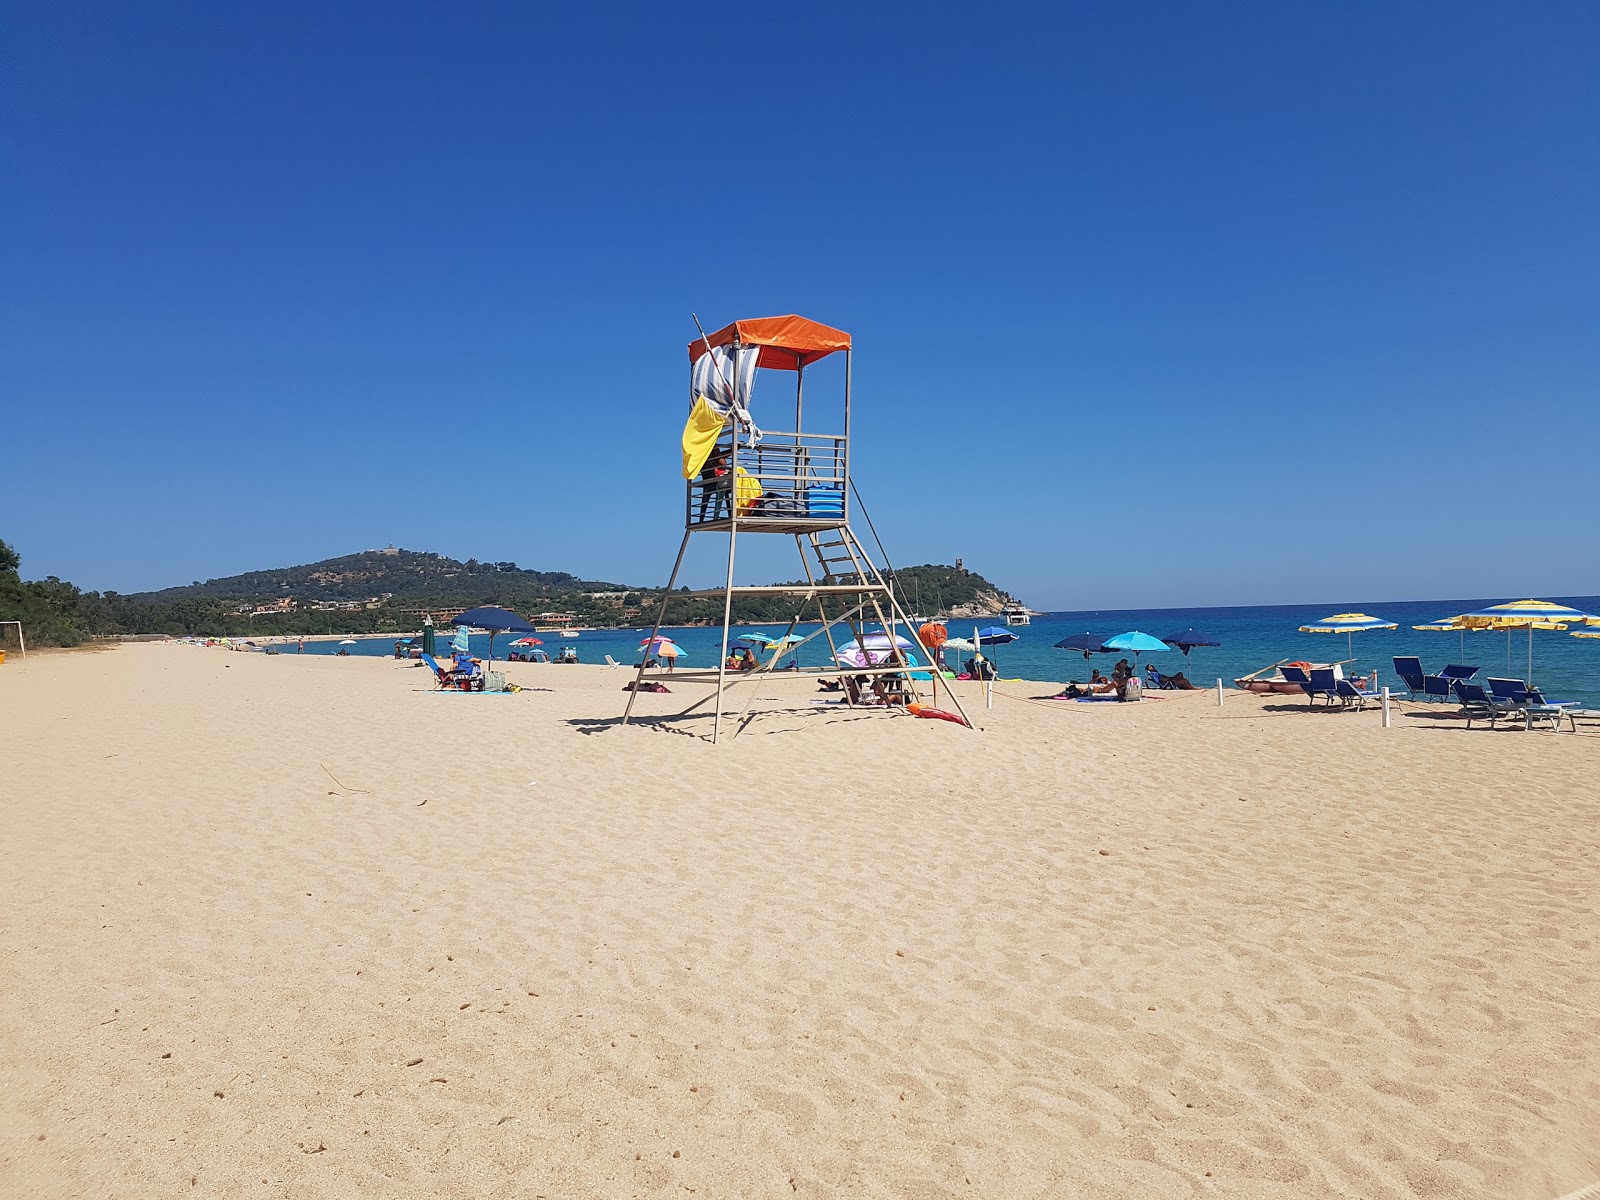 Foto de Spiaggia di Basaura - lugar popular entre los conocedores del relax